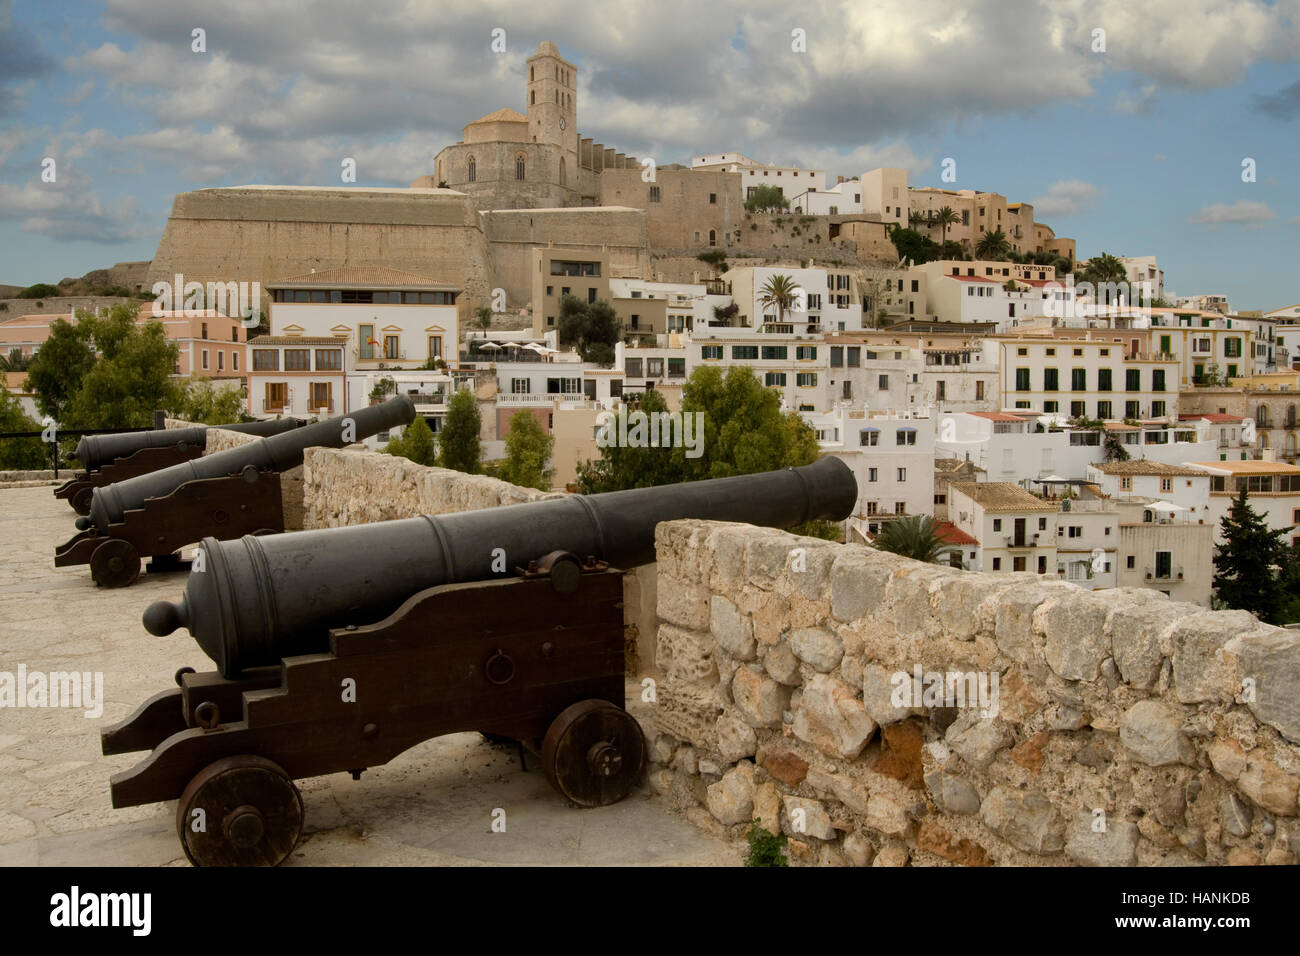 Vue de la forteresse de Dalt Vila et la ville d'Ibiza depuis le bastion de Saint Lucia Banque D'Images